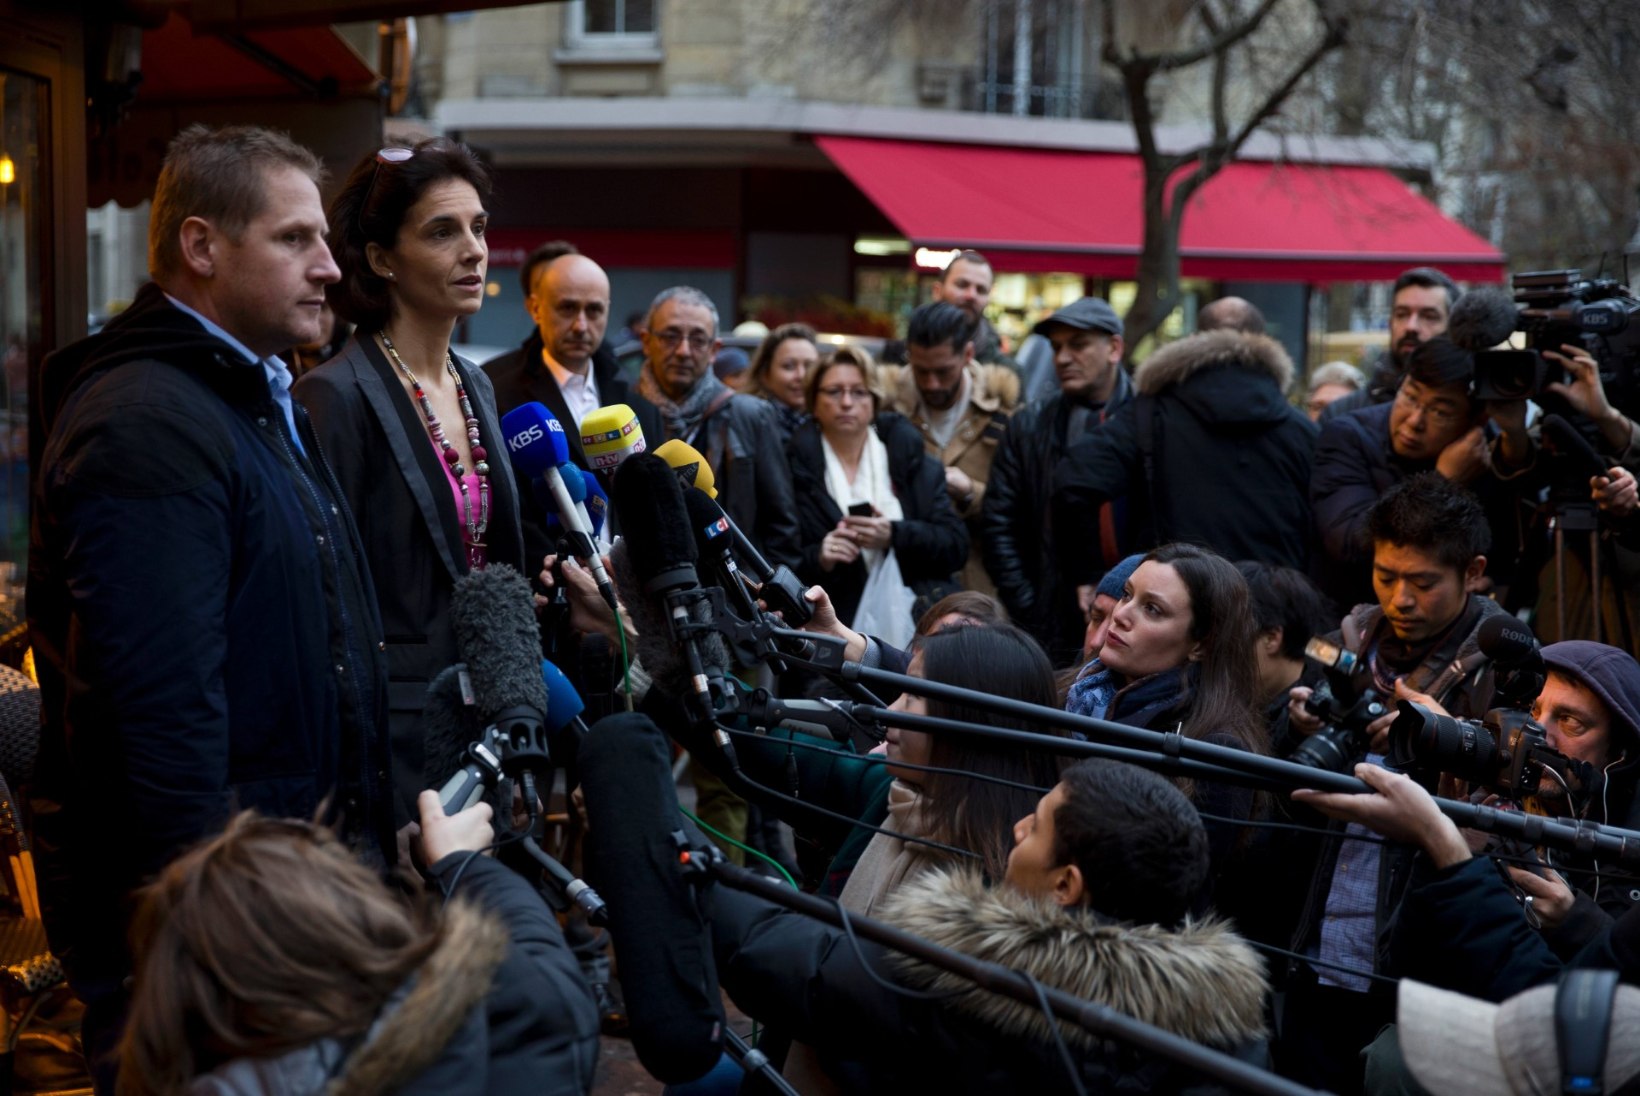 FOTOD | Pariisi terrorirünnaku ajal tapalavaks muutunud kohvik avas uuesti uksed